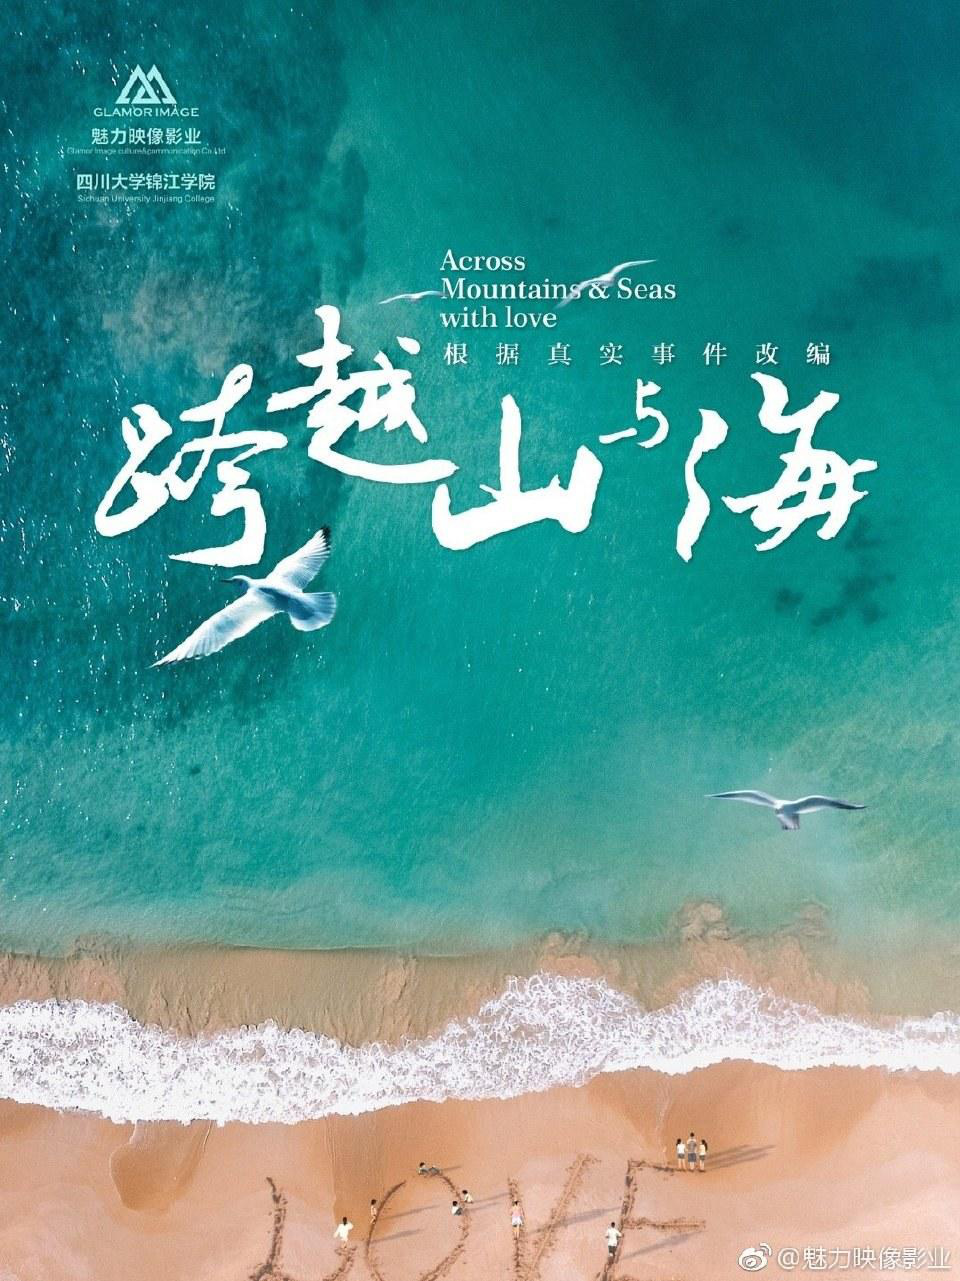 《跨越山与海》亮相香港影视展 暖心故事引期待